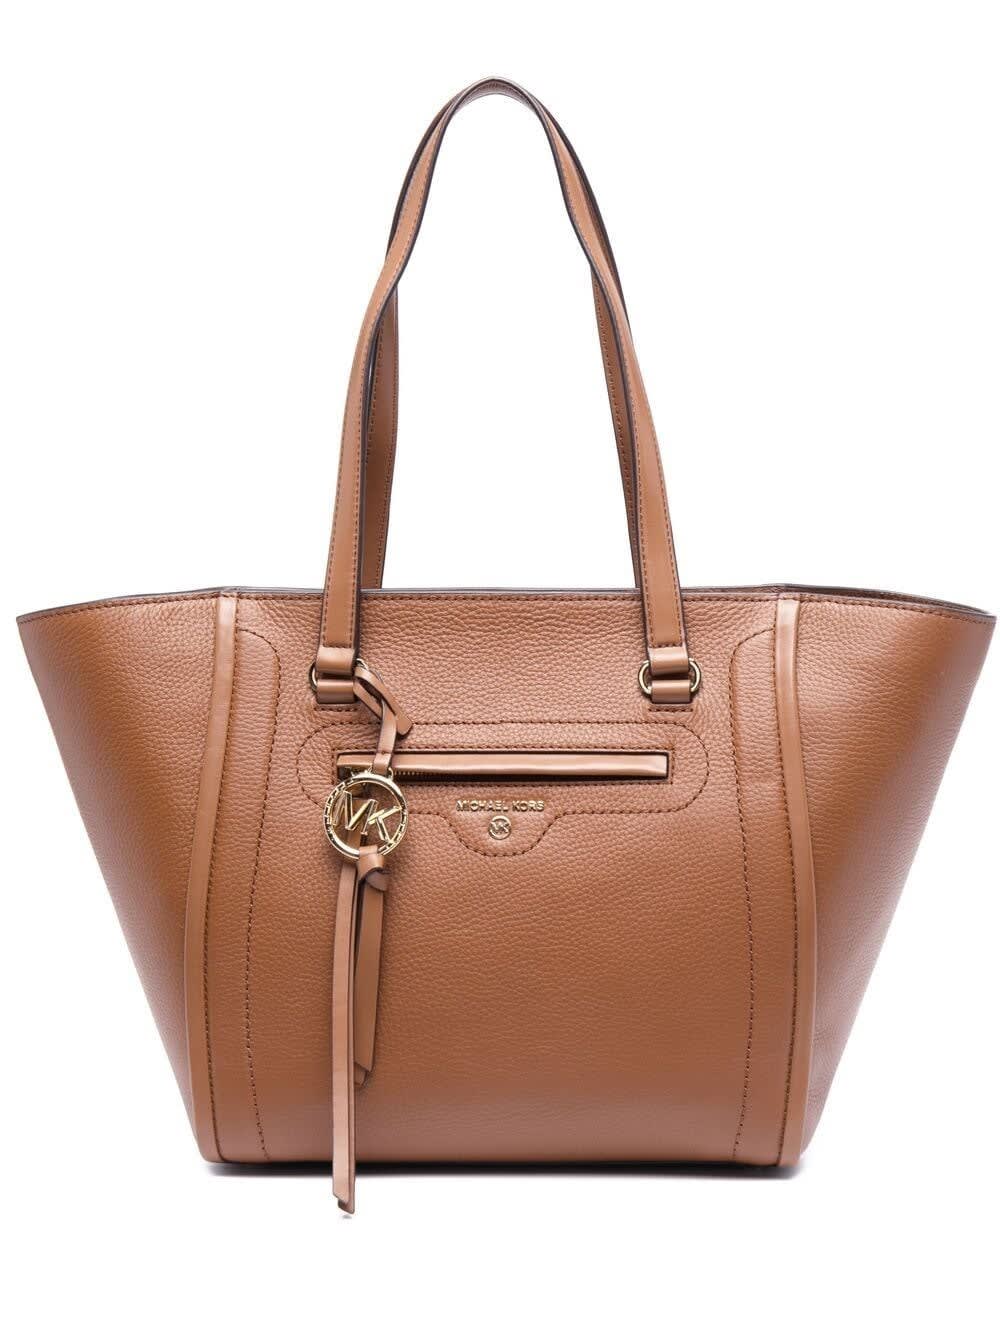 MICHAEL Michael Kors Carine Tote Handbag In Brown Leather